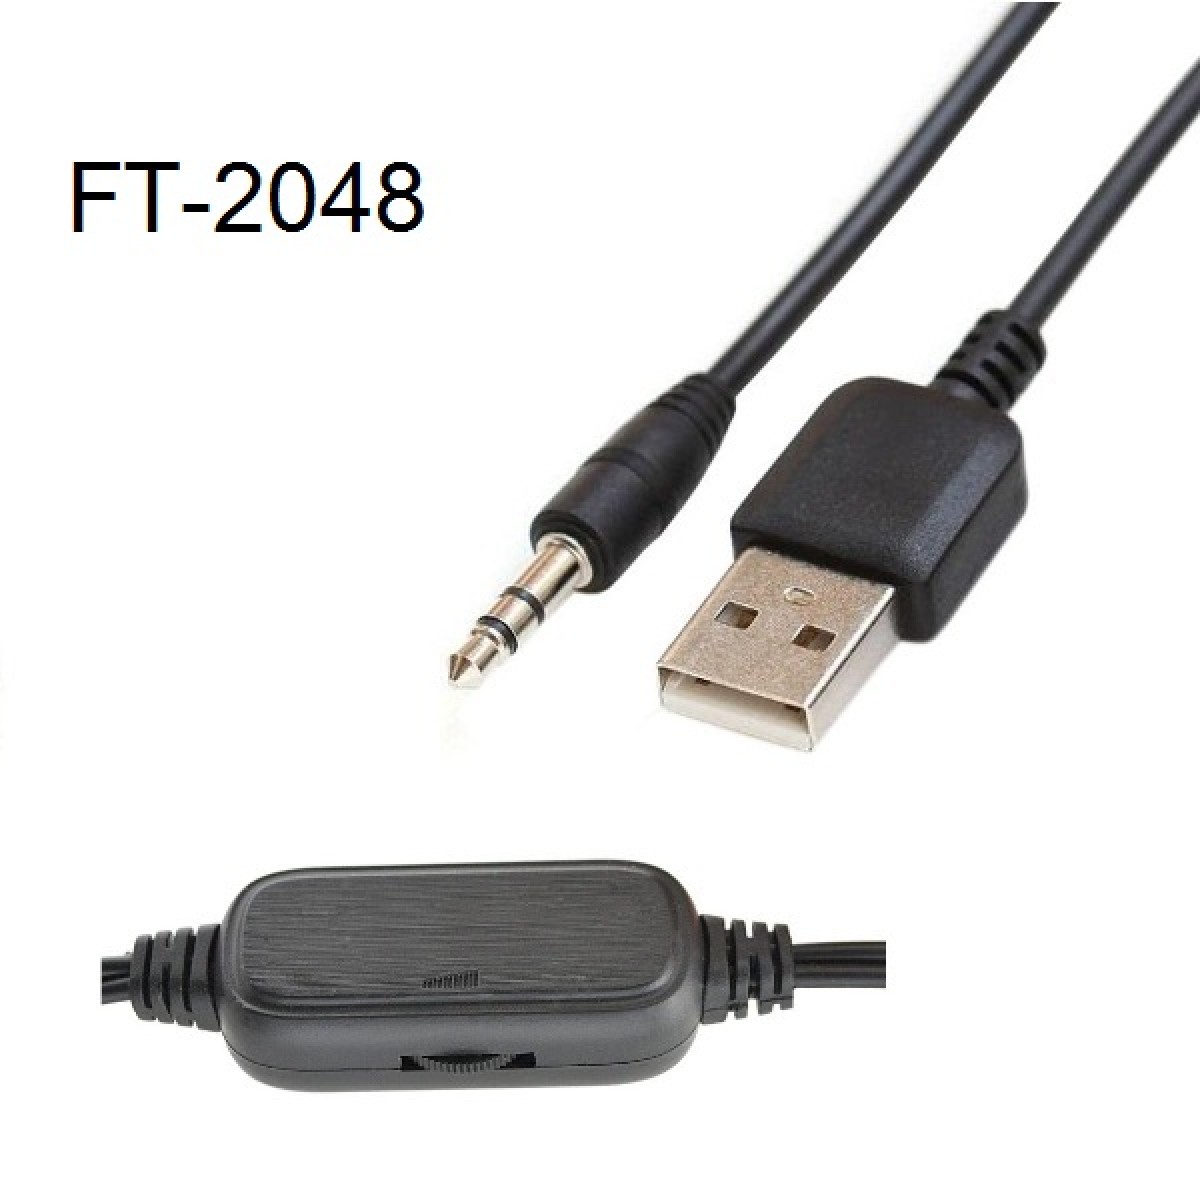 Ηχεία πολυμέσων USB χρυσό 2 τεμάχια FT-2048